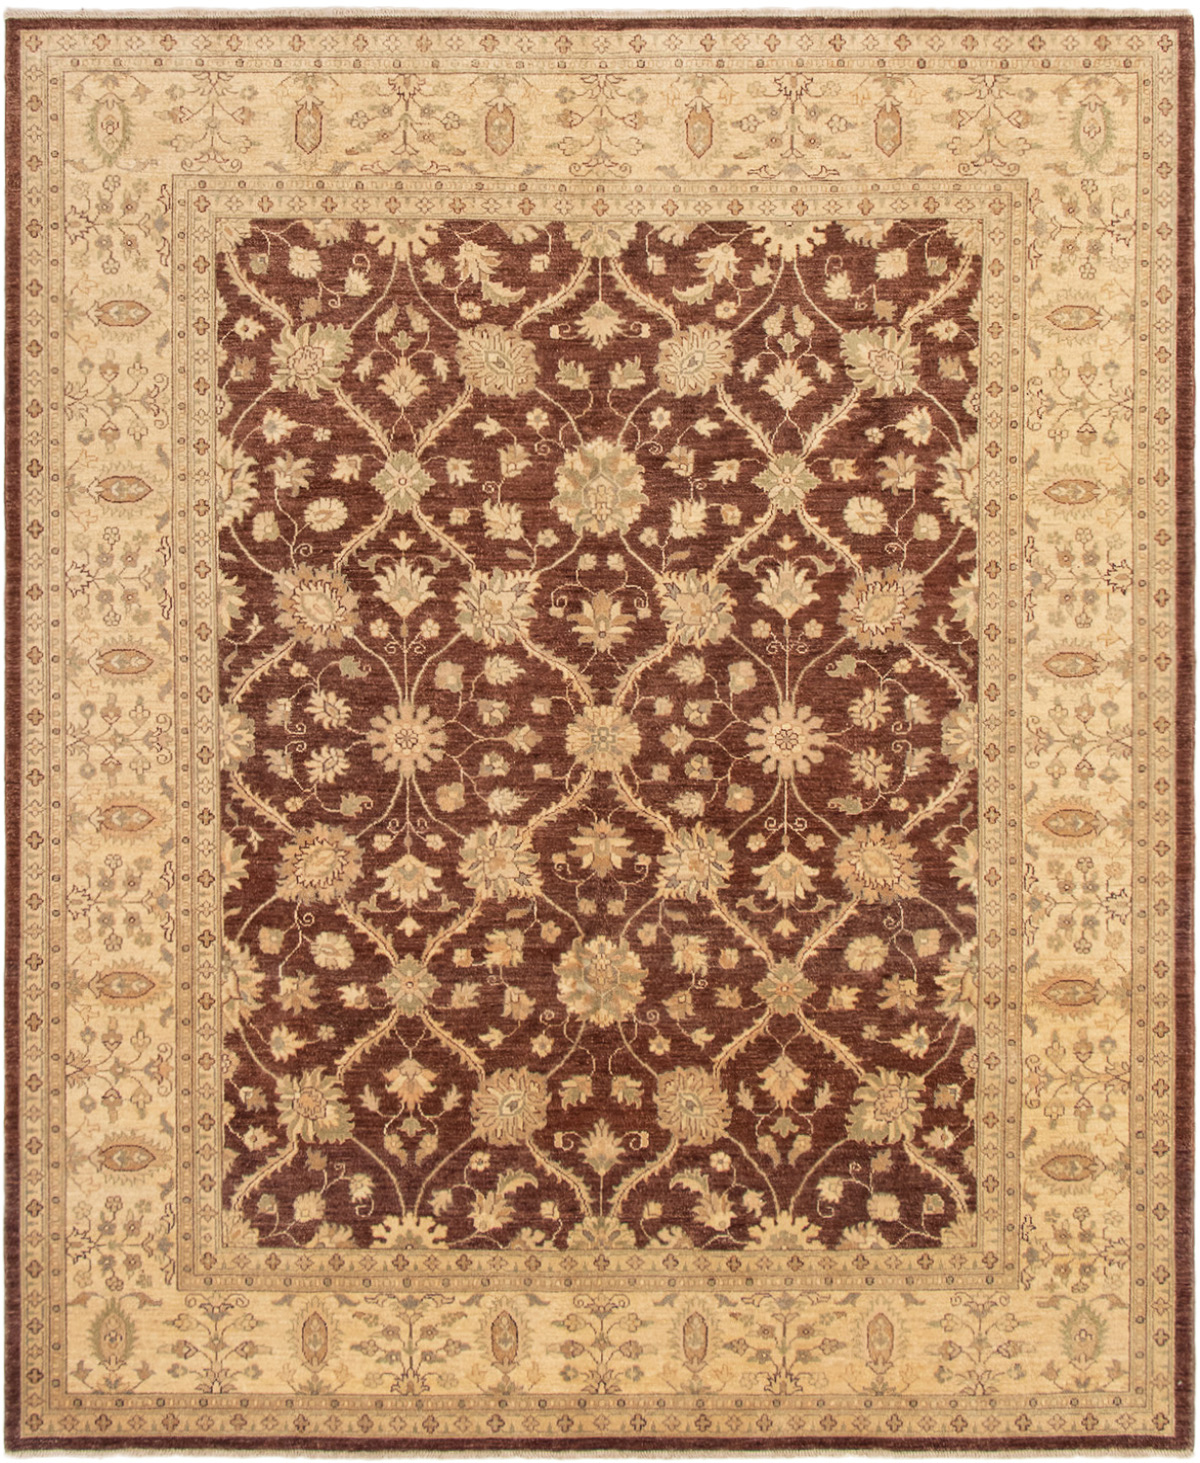 Hand-knotted Peshawar Finest Dark Brown Wool Rug 8'3" x 10'0" Size: 8'3" x 10'0"  